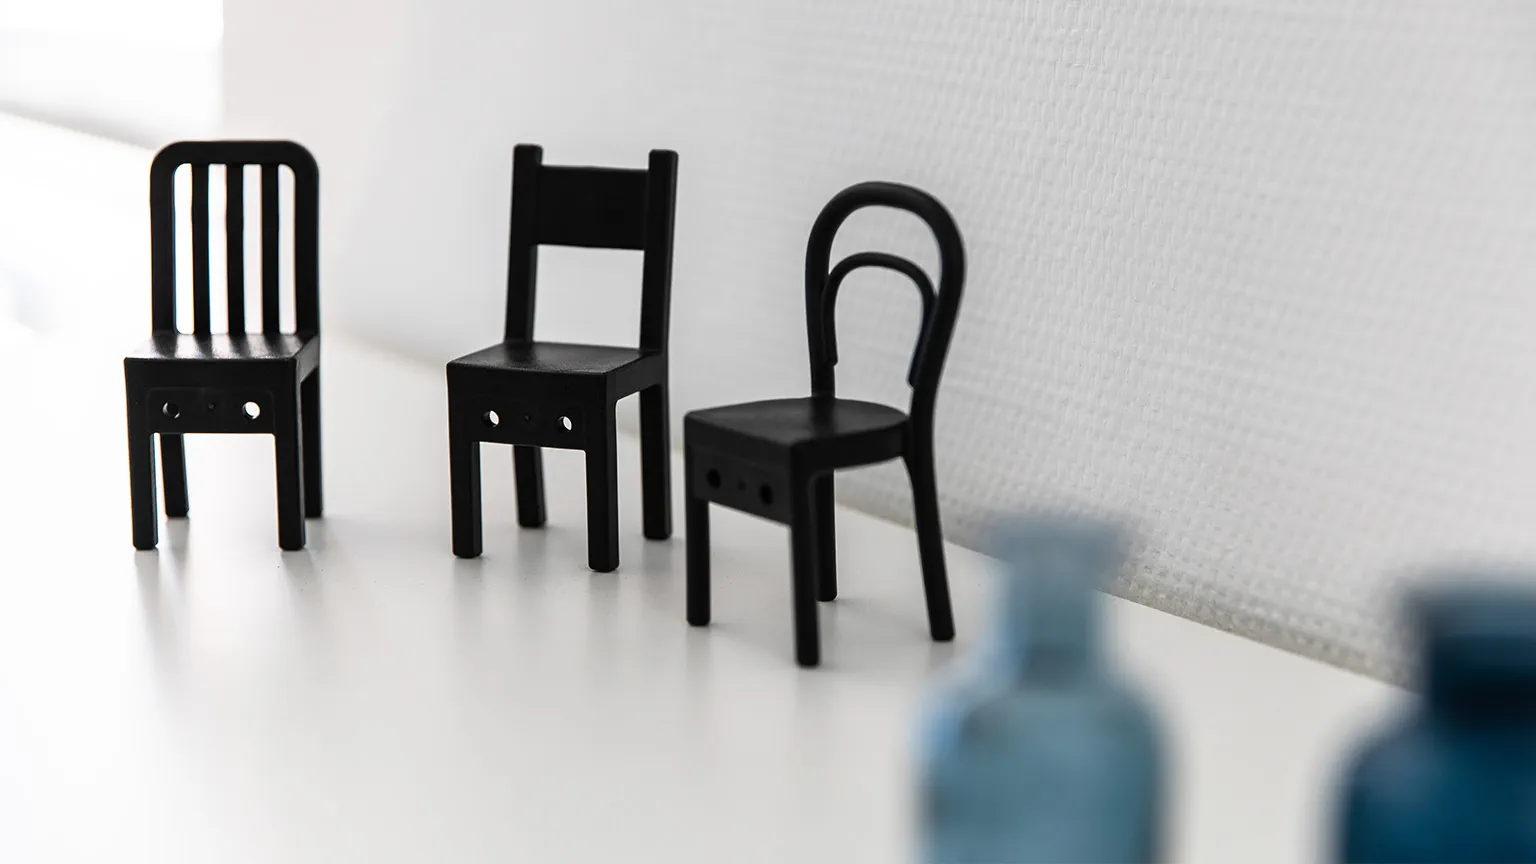 Drei Miniaturstühle stehen auf einem Regal.